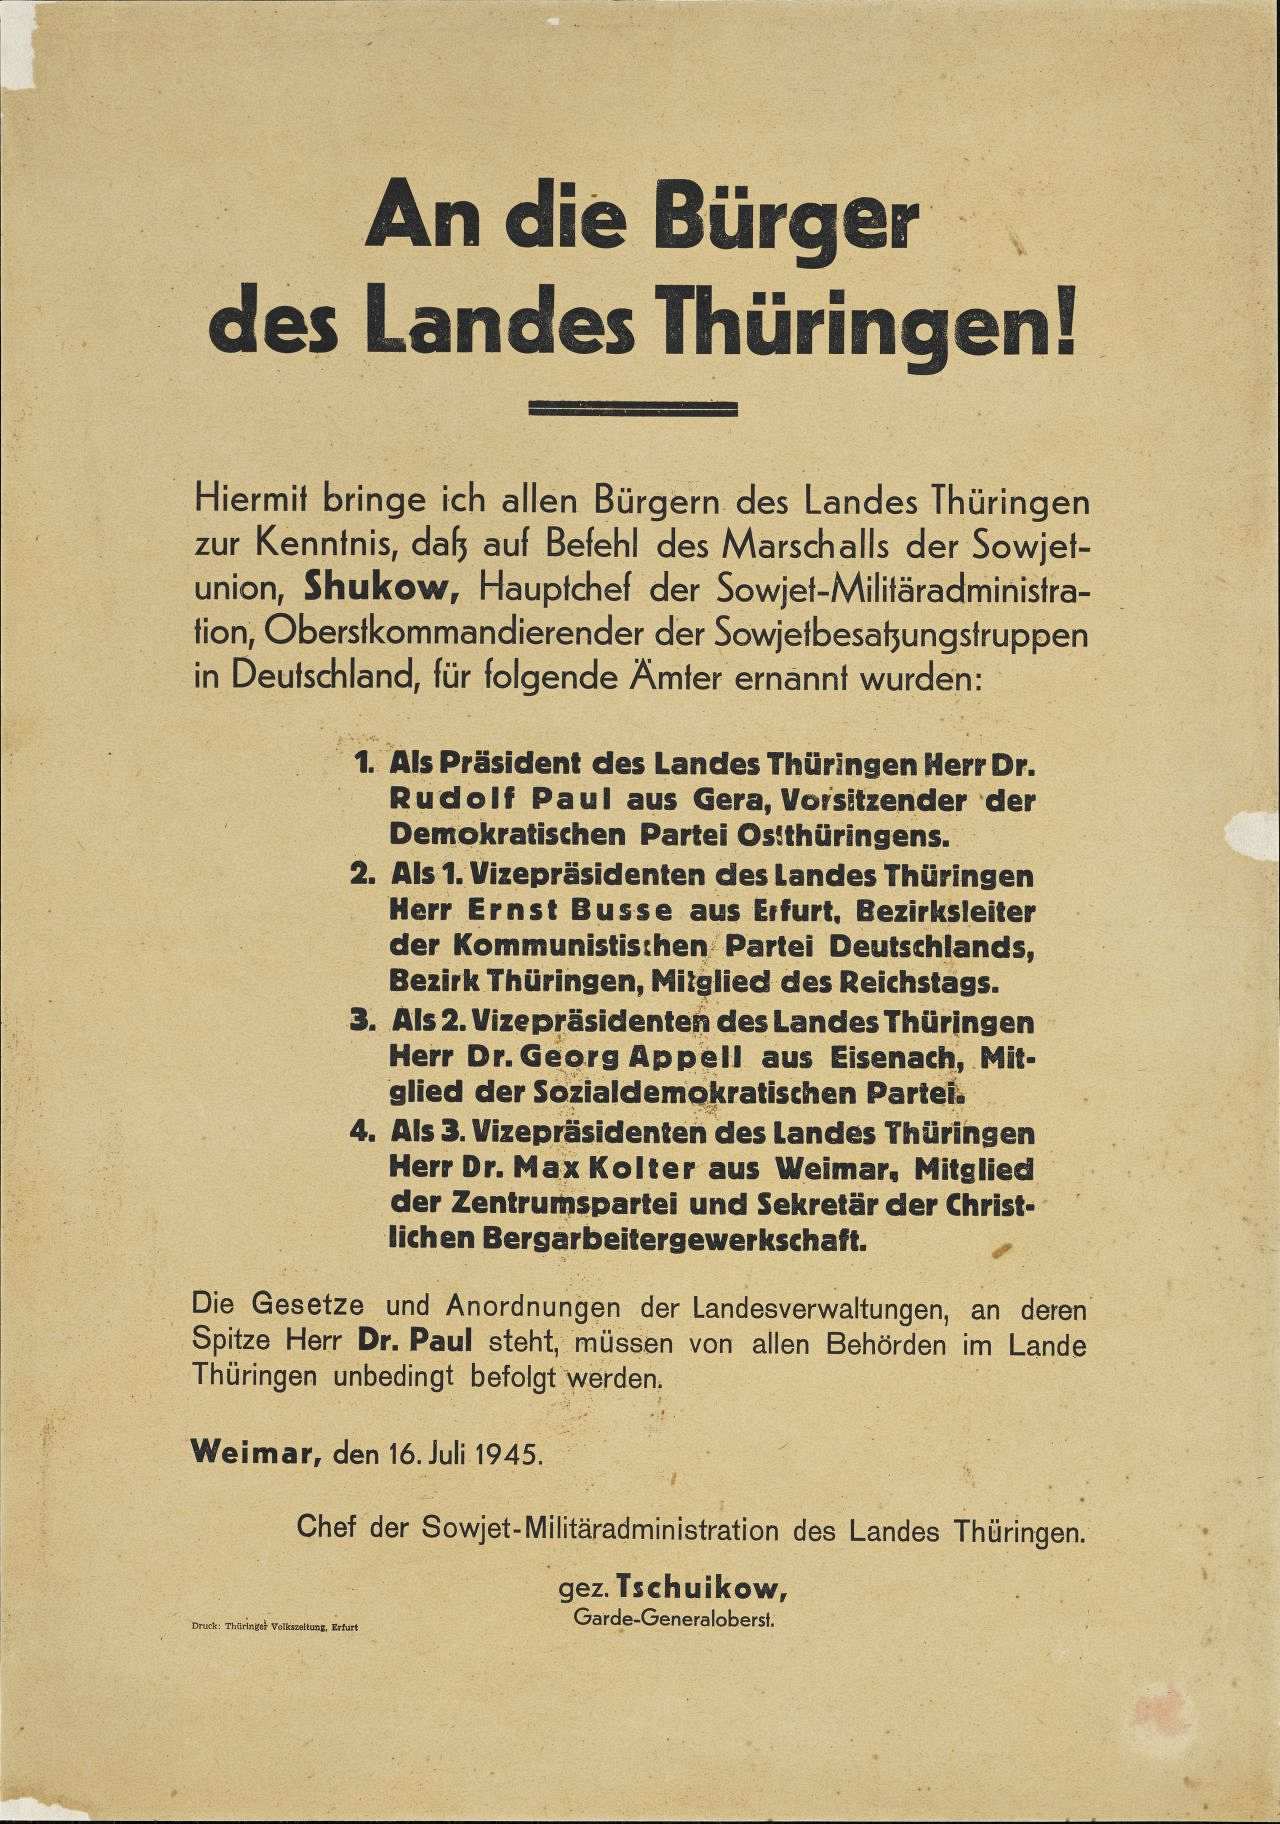 Weißes Textplakat: Befehl des Marschalls der SU, Shukow, zur Verteilung wichtiger Ämter in Thüringen         